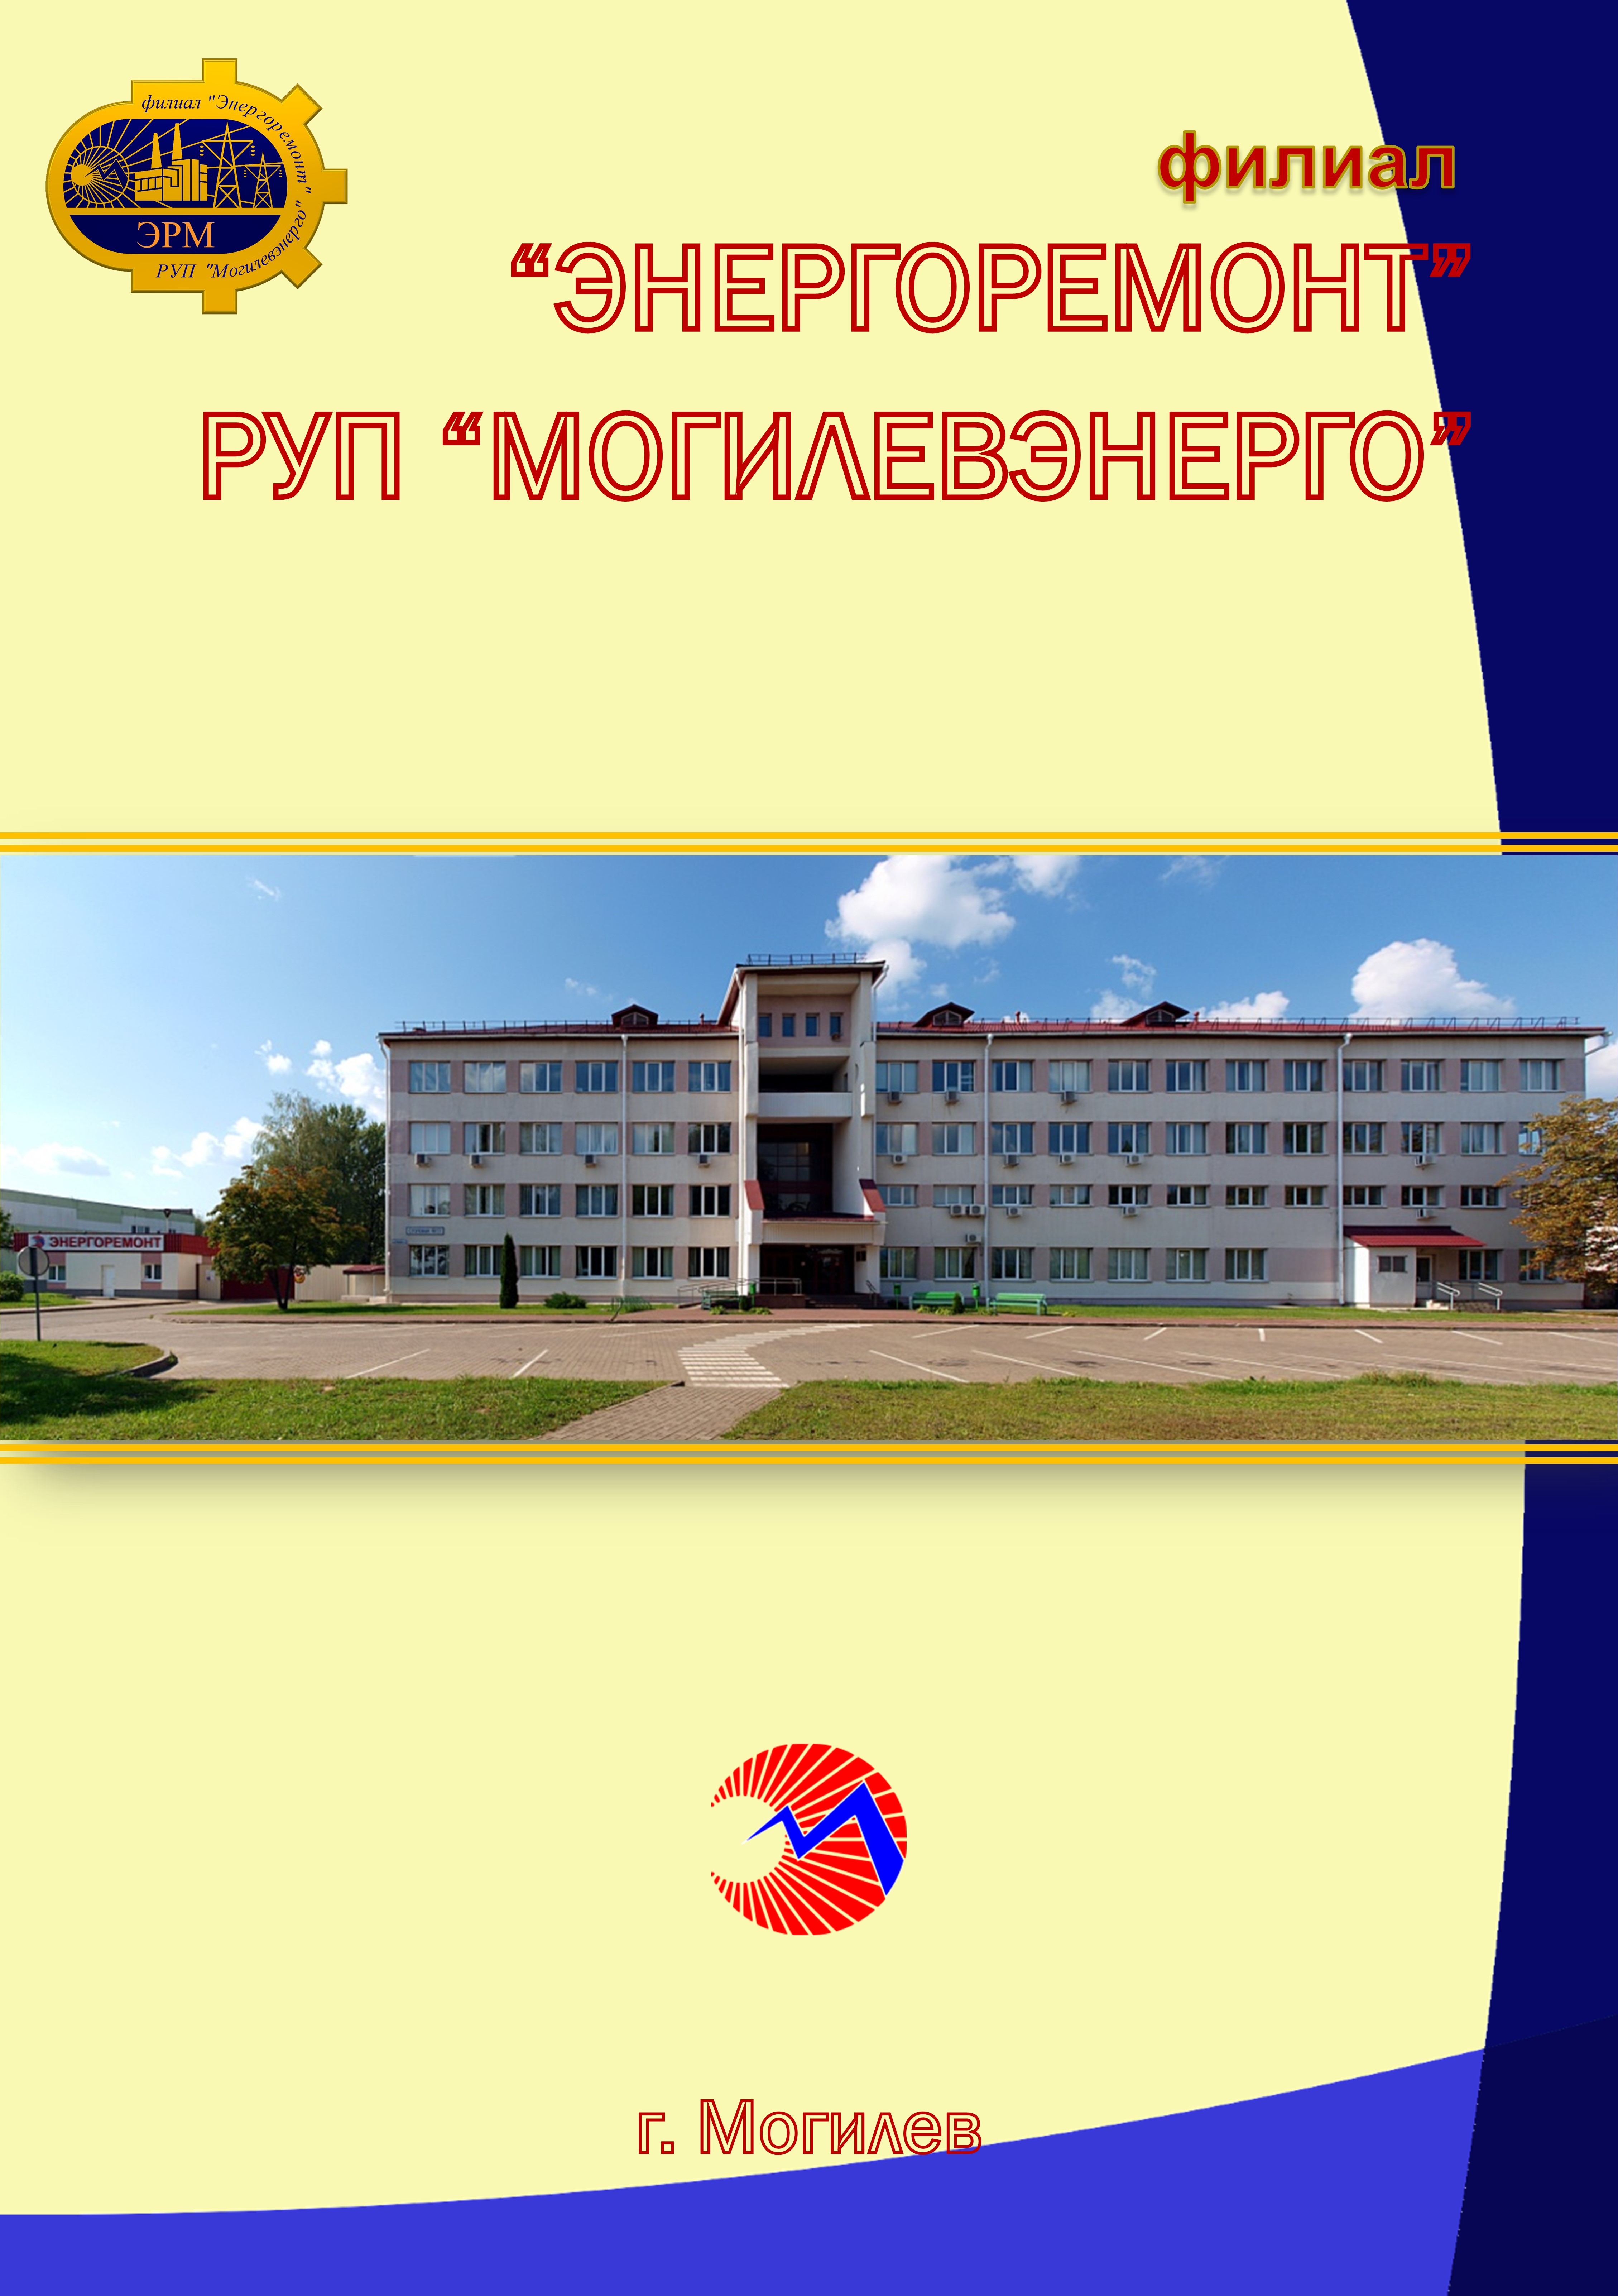 Филиал "Энергоремонт" РУП "Могилевэнерго"